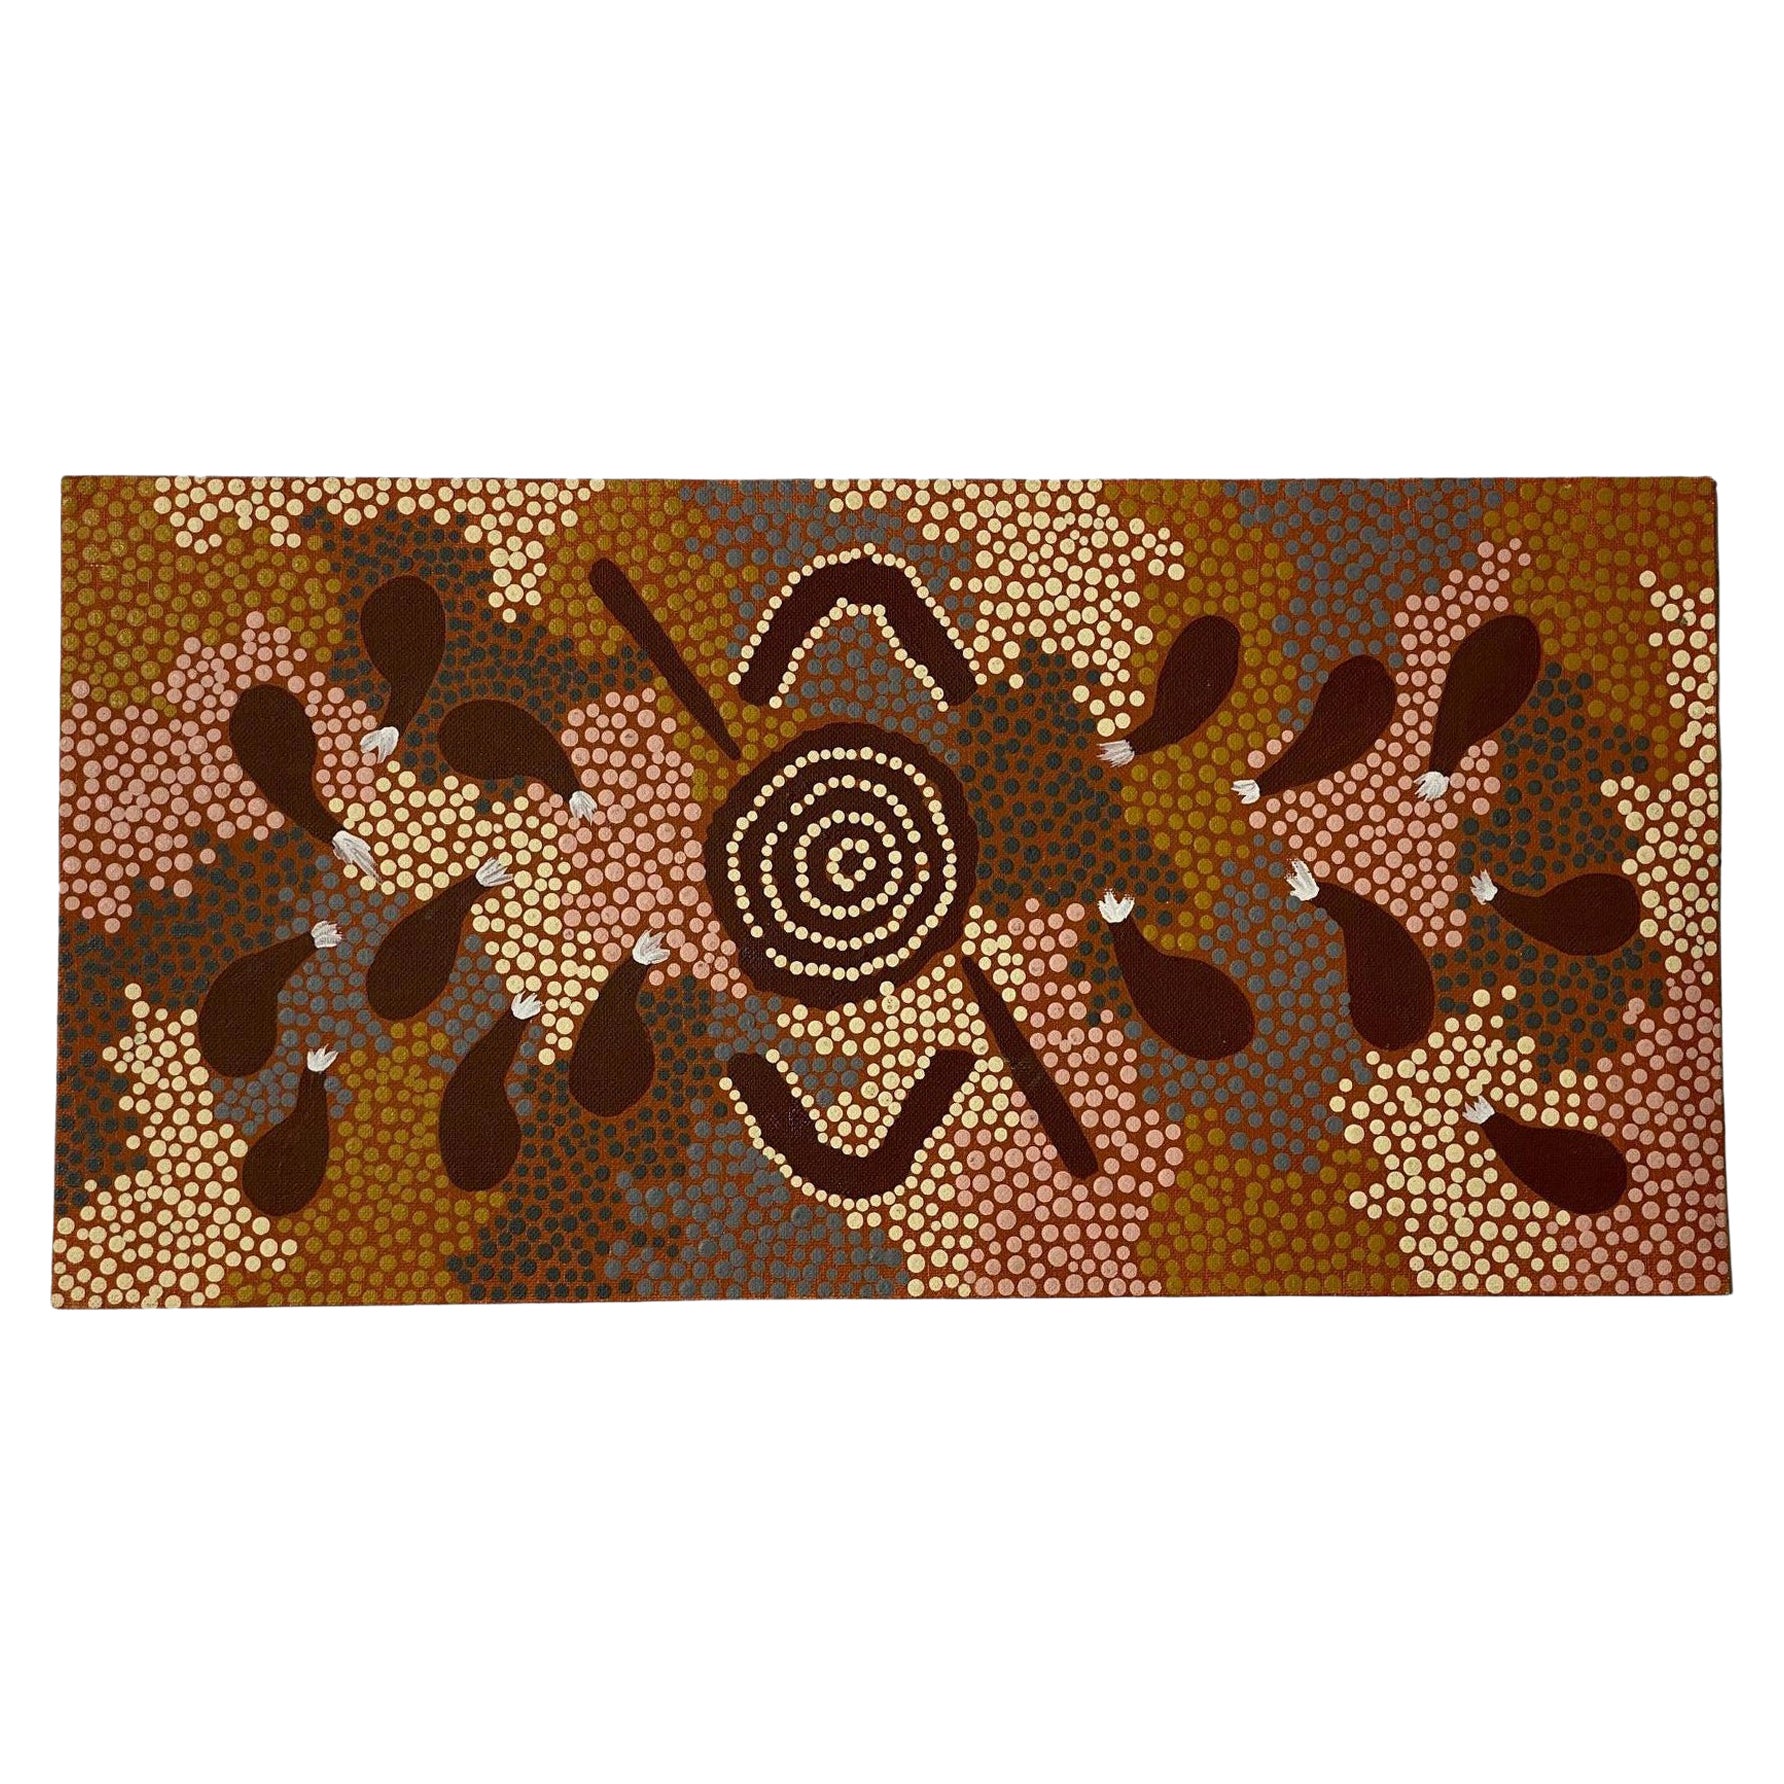 Clifford Possum Tjapaltjarri Signed Indigenous Aboriginal Art Original Painting 